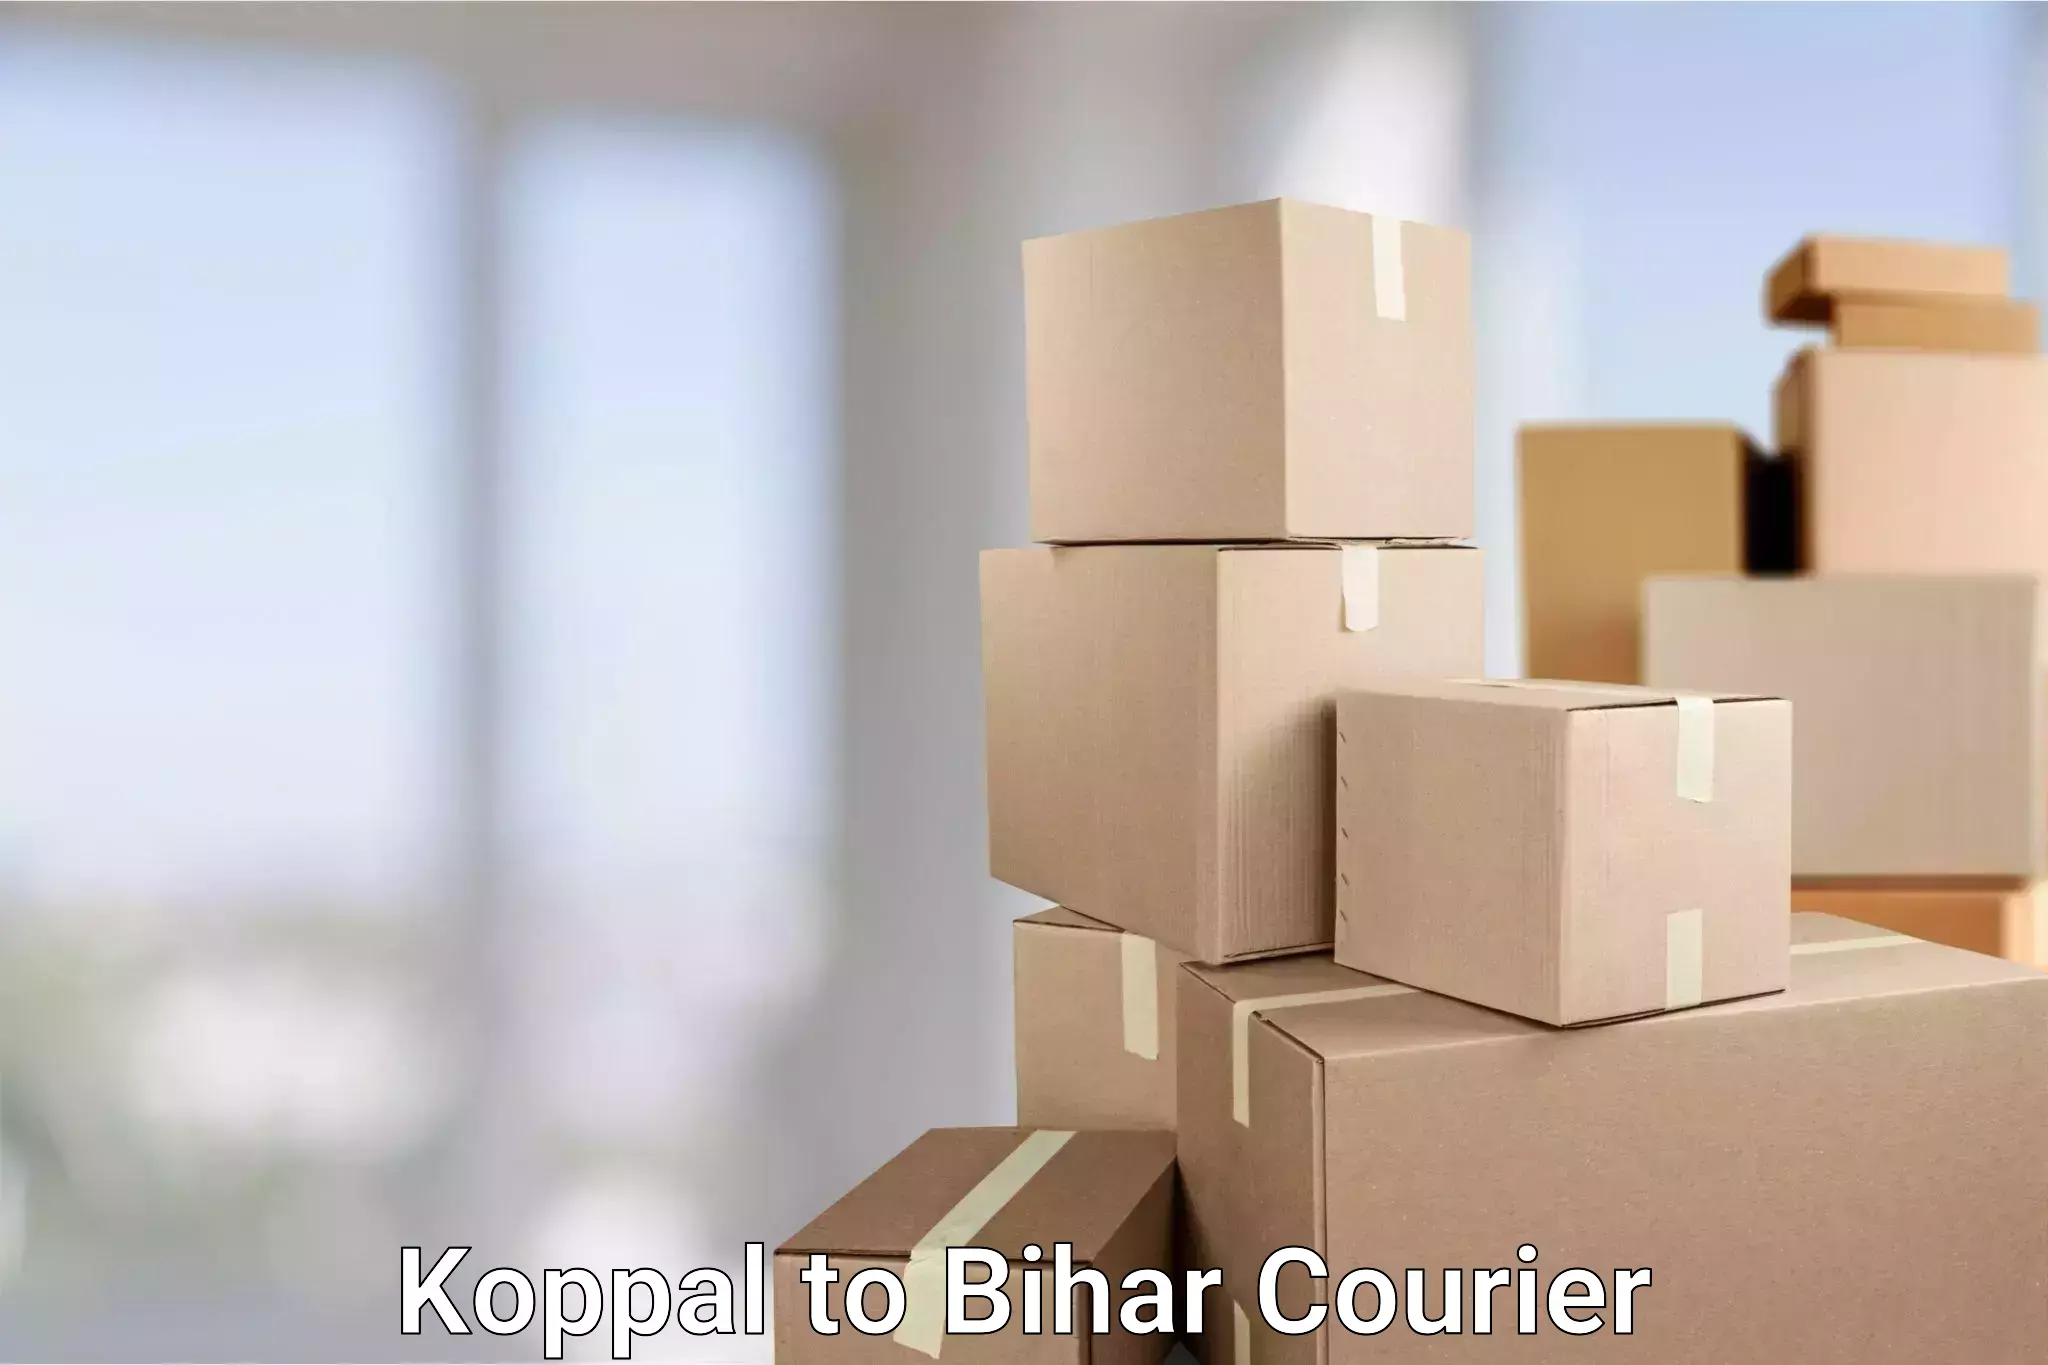 Doorstep delivery service Koppal to Mahnar Bazar